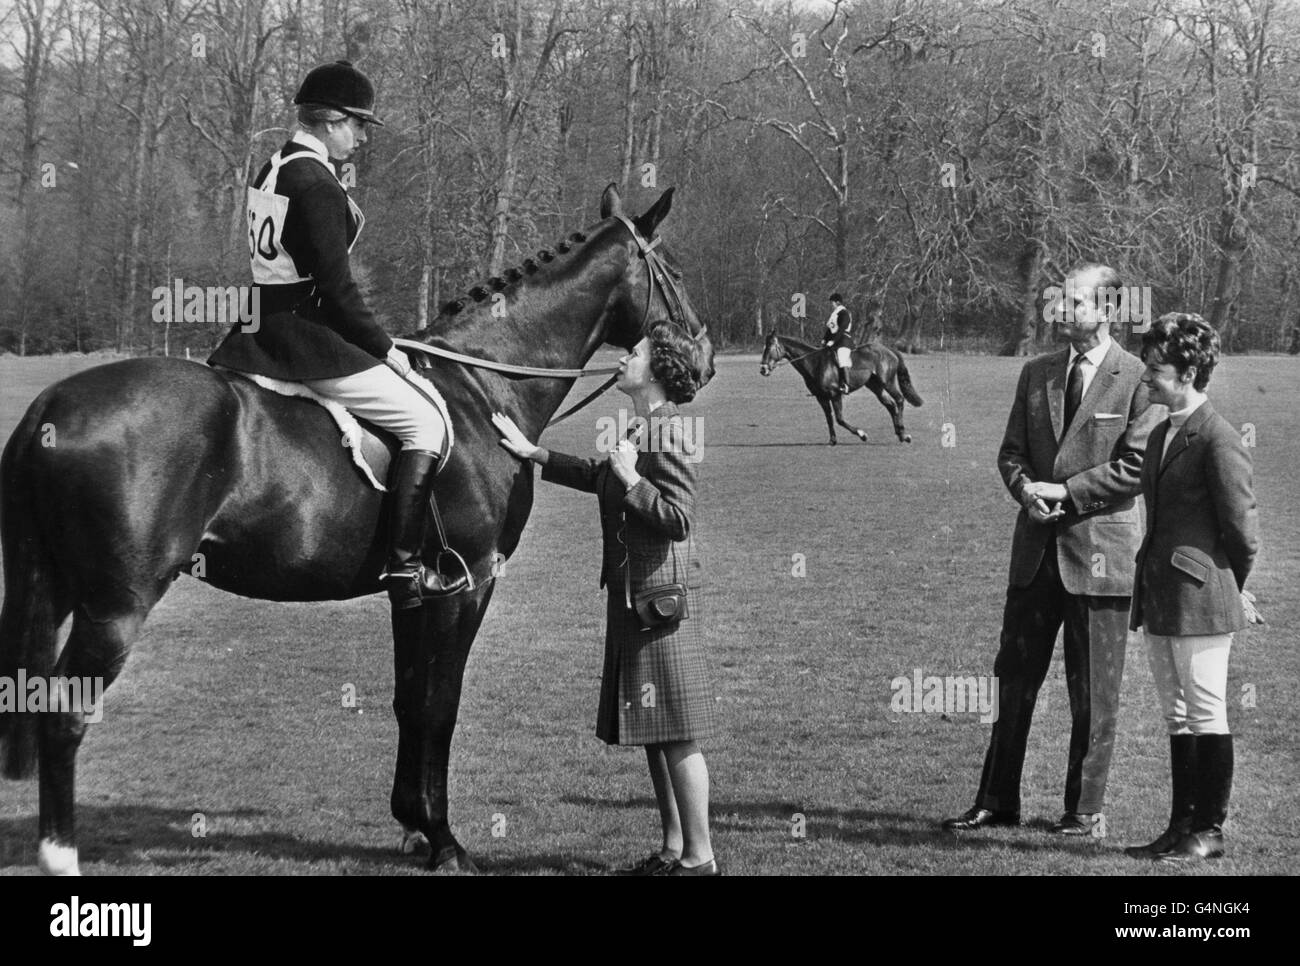 La princesse Anne, montée sur l'océan Royal, reçoit un certain encouragement de la part de la reine, sous la surveillance du duc d'Édimbourg et d'Alison Oliver, épouse de l'un des concurrents du saut de spectacle, lors des essais hippiques de Windsor Park à Windsor Great Park. Banque D'Images